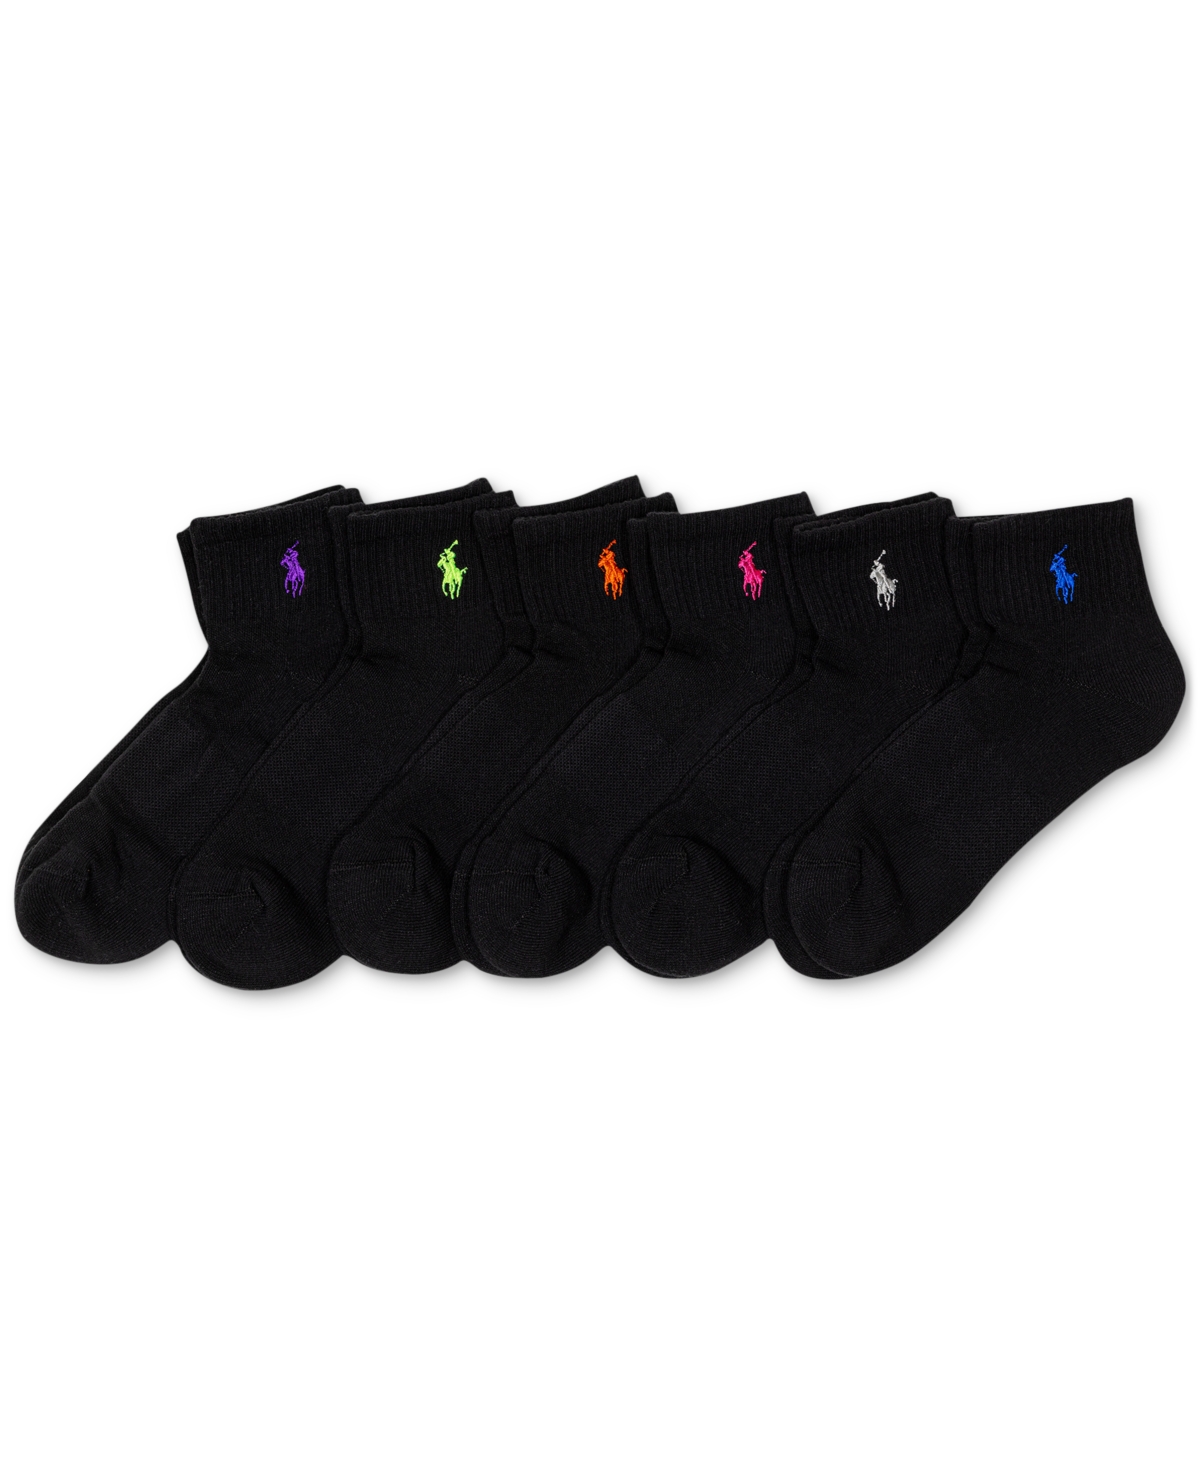 Polo Ralph Lauren Women's 6-pk. Cushion Quarter Socks In Black Assortment